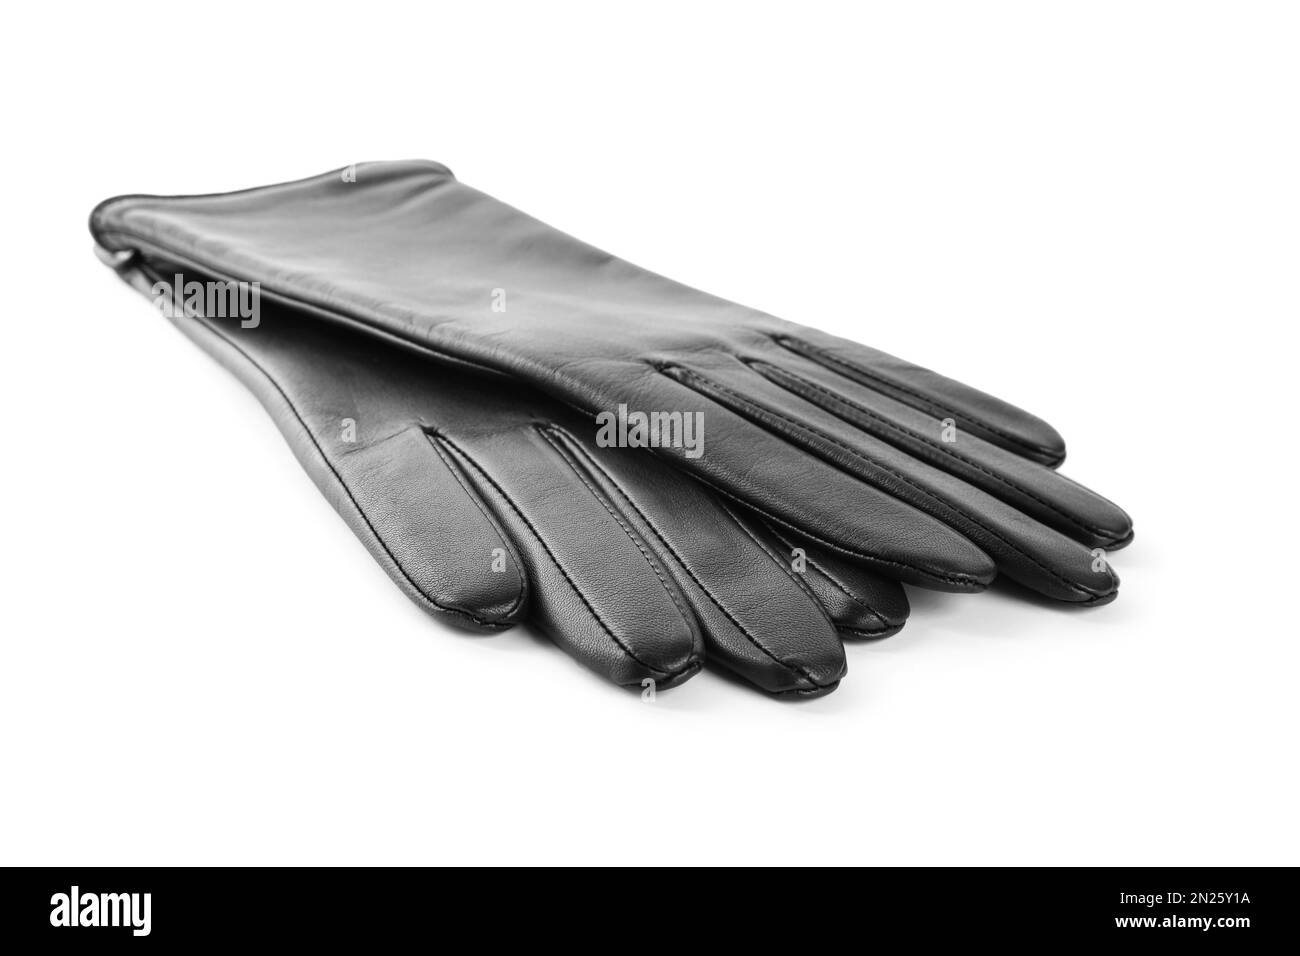 Stylish black leather gloves on white background Stock Photo